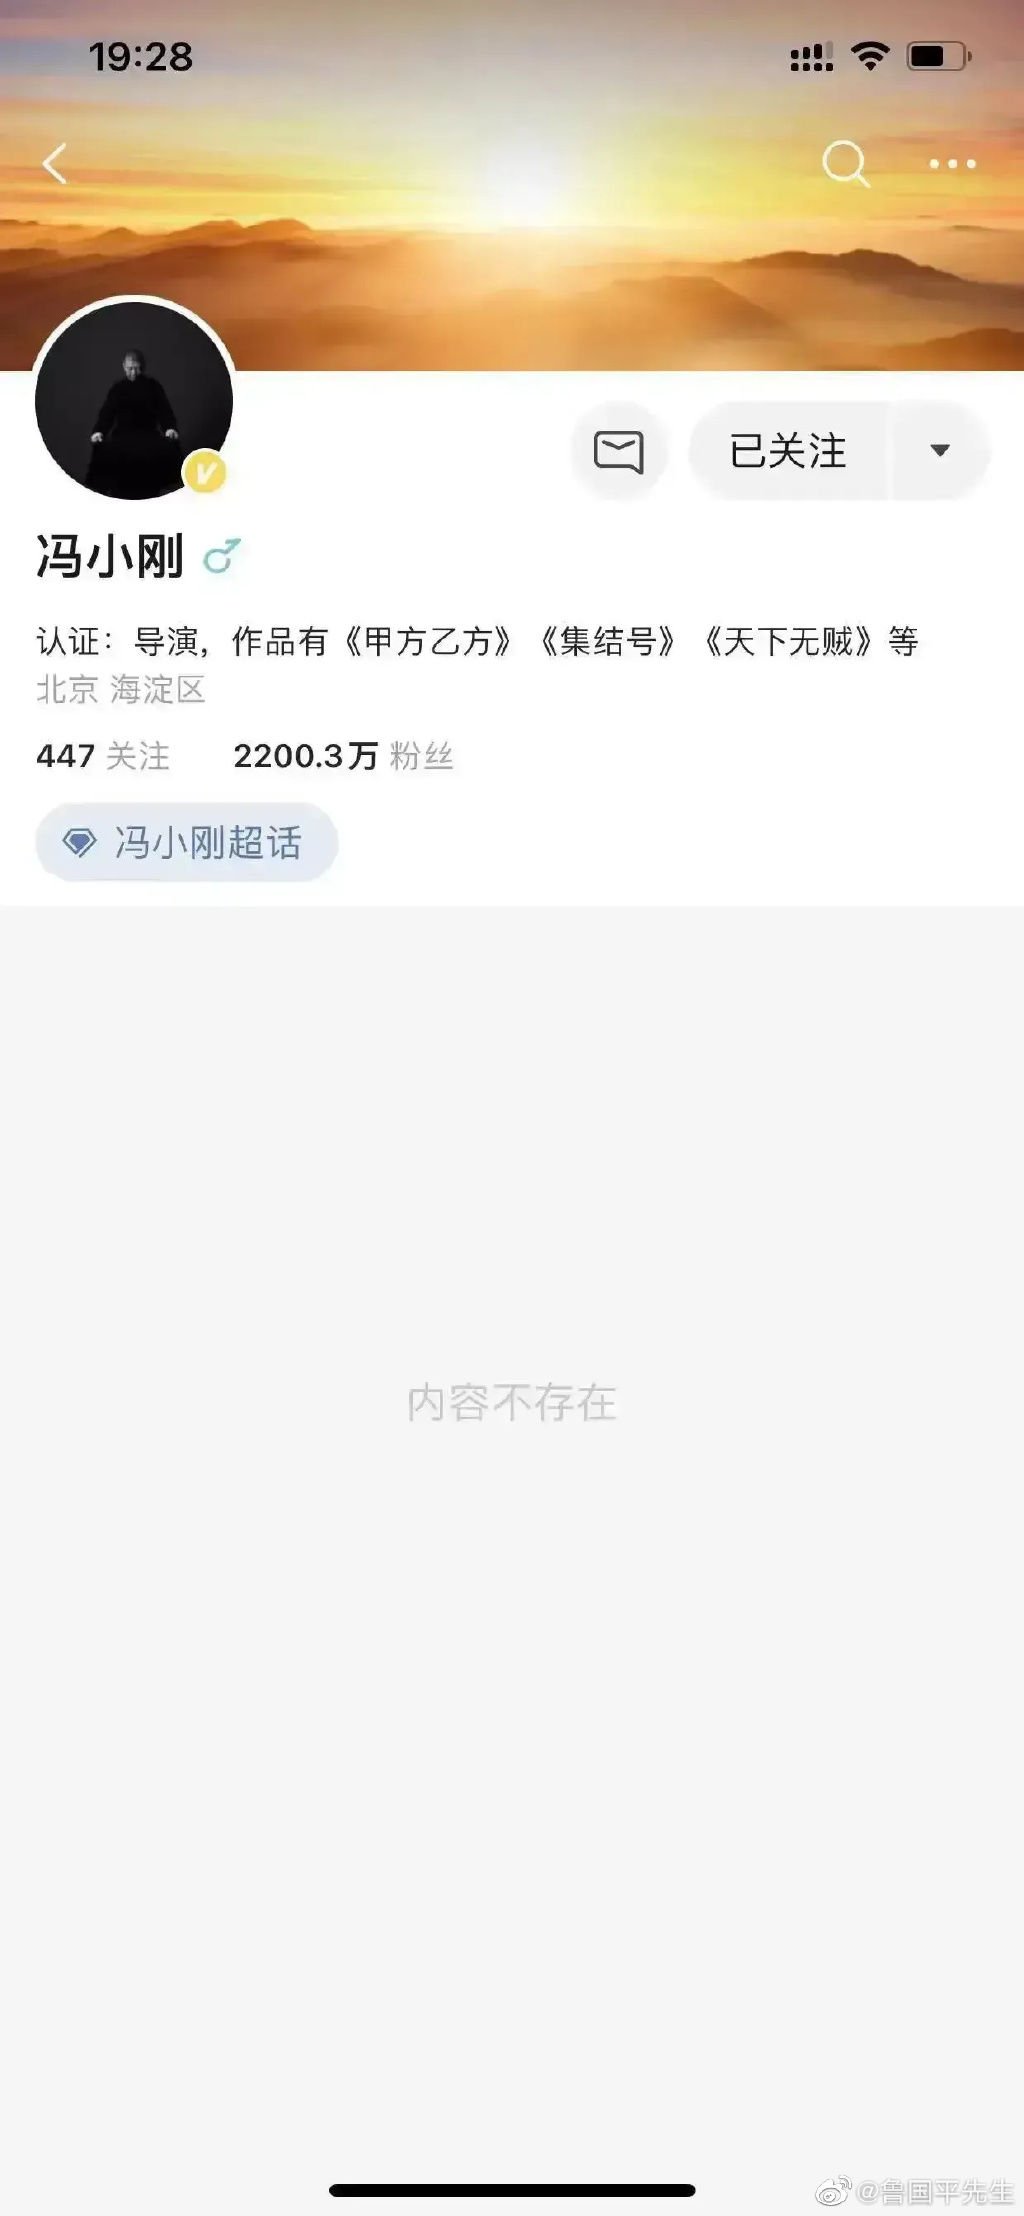 冯小刚的微博全部文章都清空。